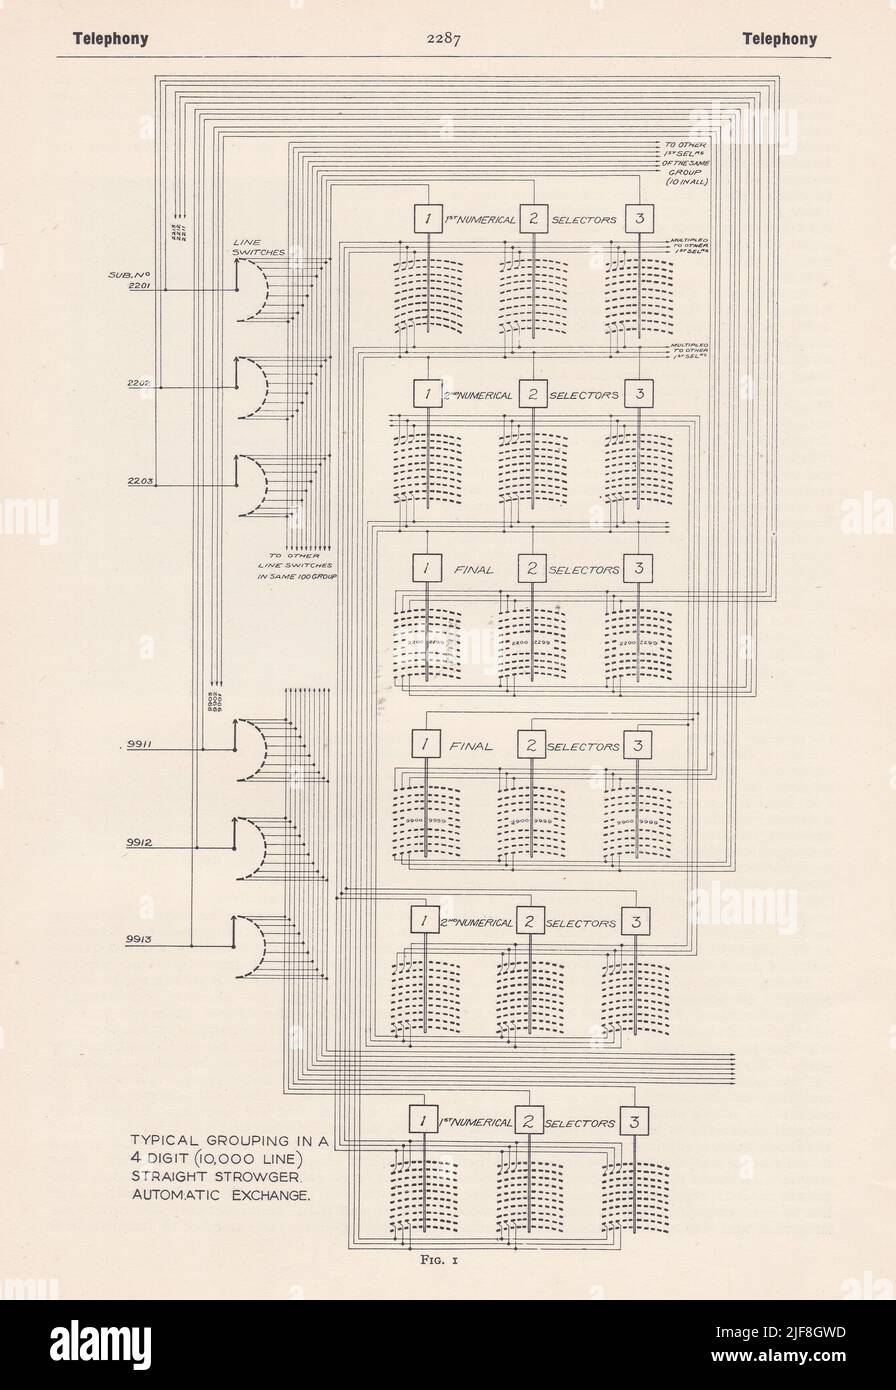 Vintage diagram of Telephony Circuit. Stock Photo